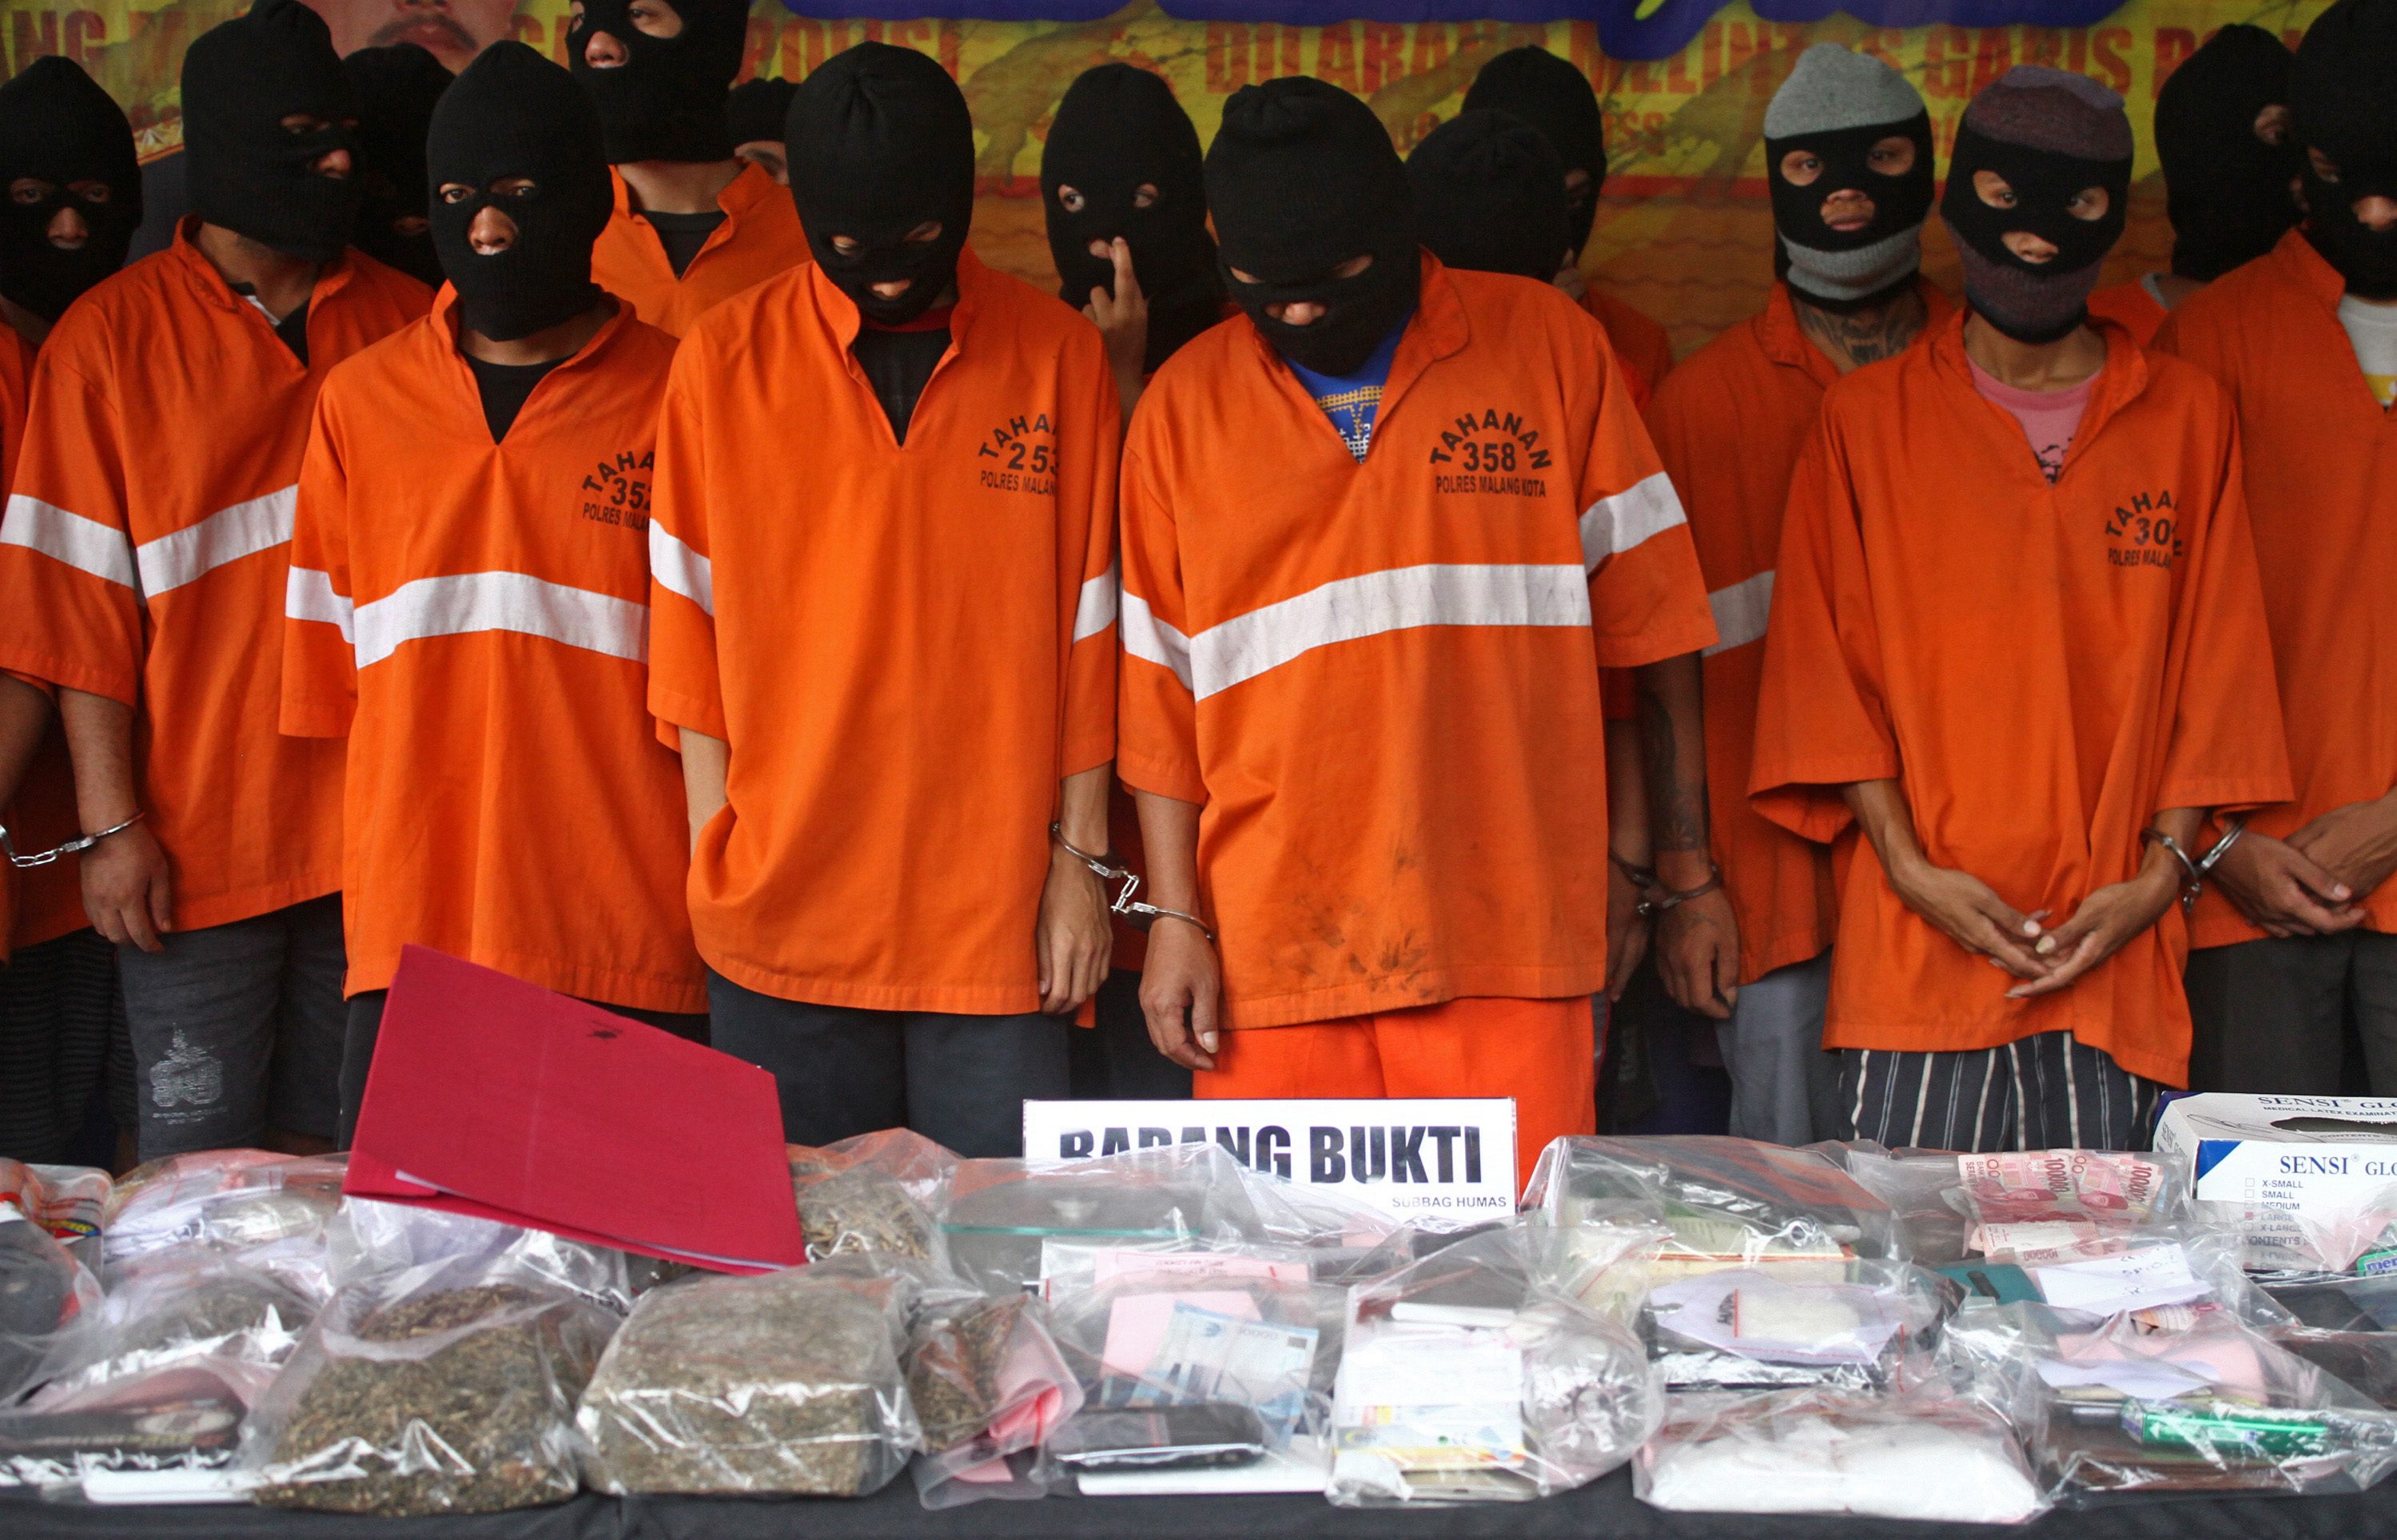 Sejumlah tersangka pengedar dan pemakai narkoba ditunjukkan di Mapolresta Malang, Jawa Timur, pada 28 Januari 2016. Foto oleh Ari Bowo Sucipto 